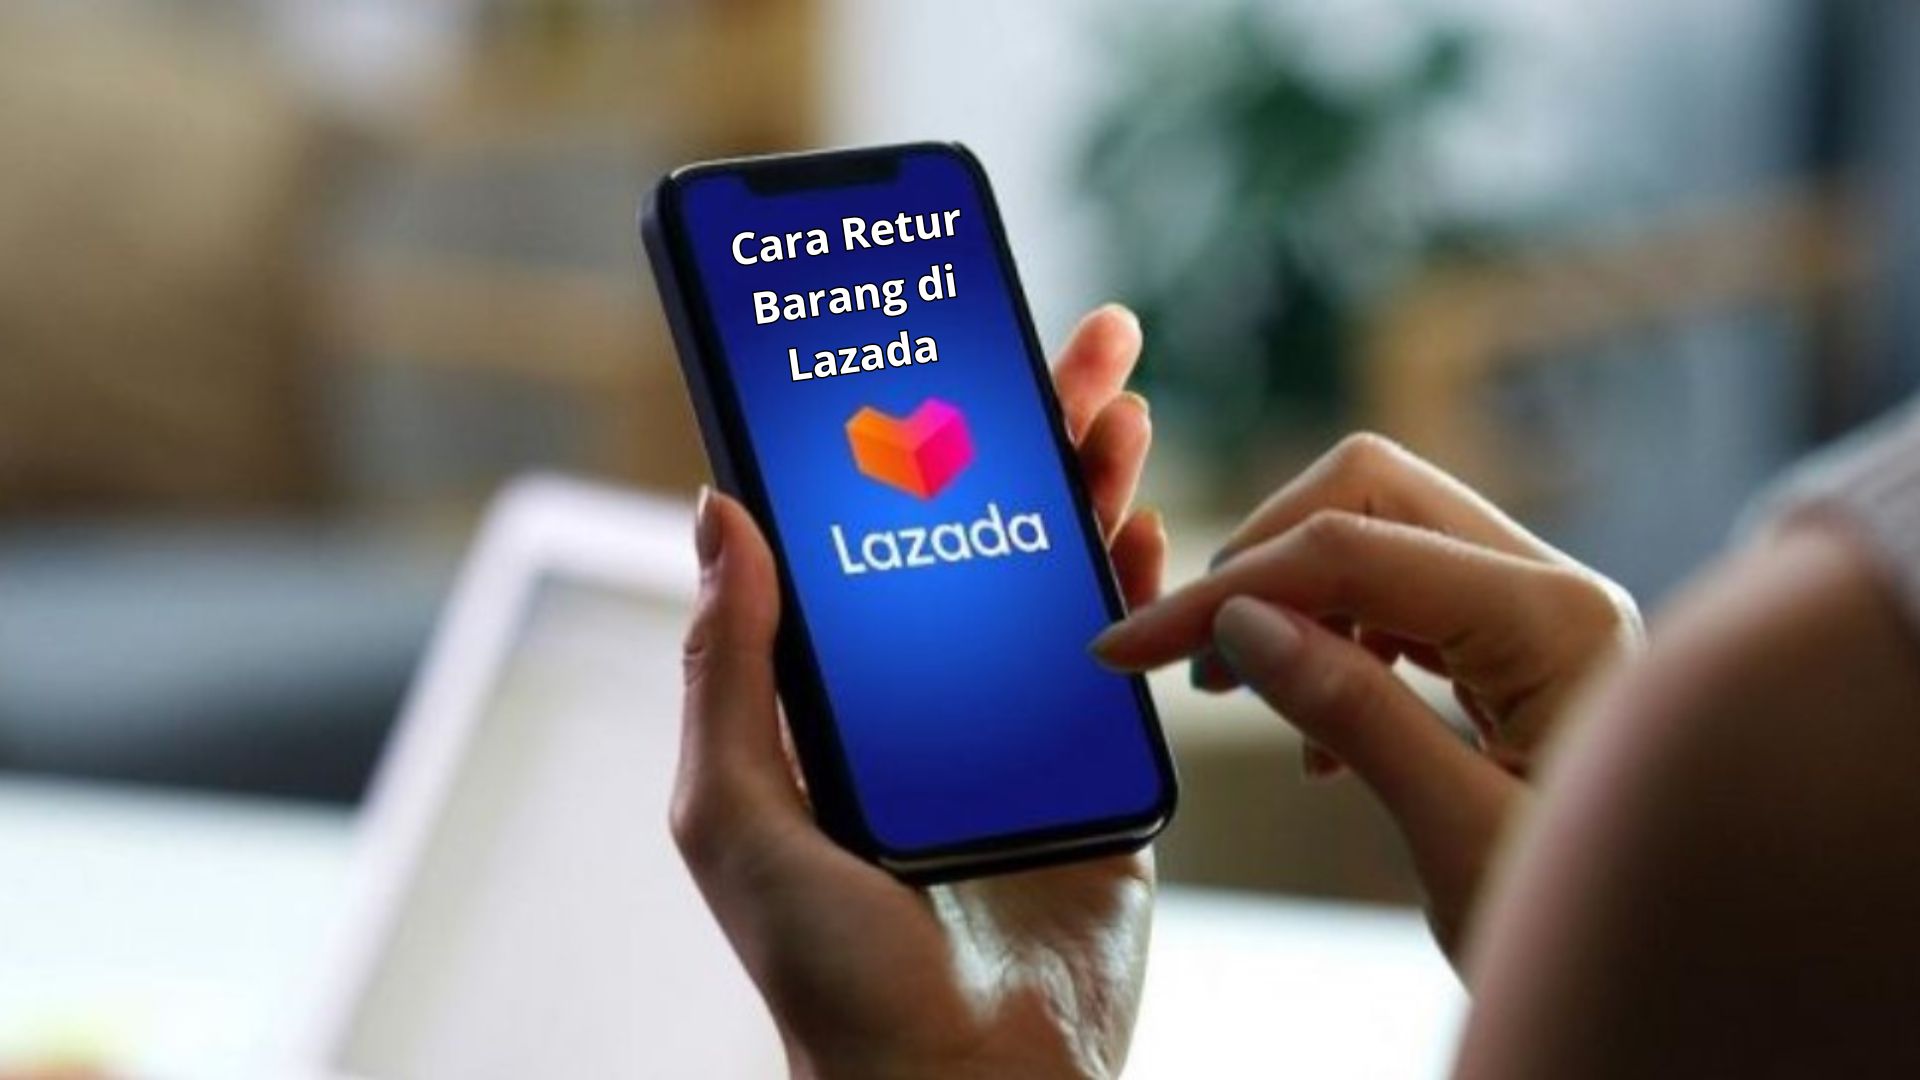 Cara Retur Barang di Lazada, Panduan Lengkap dan Syarat Pengembalian